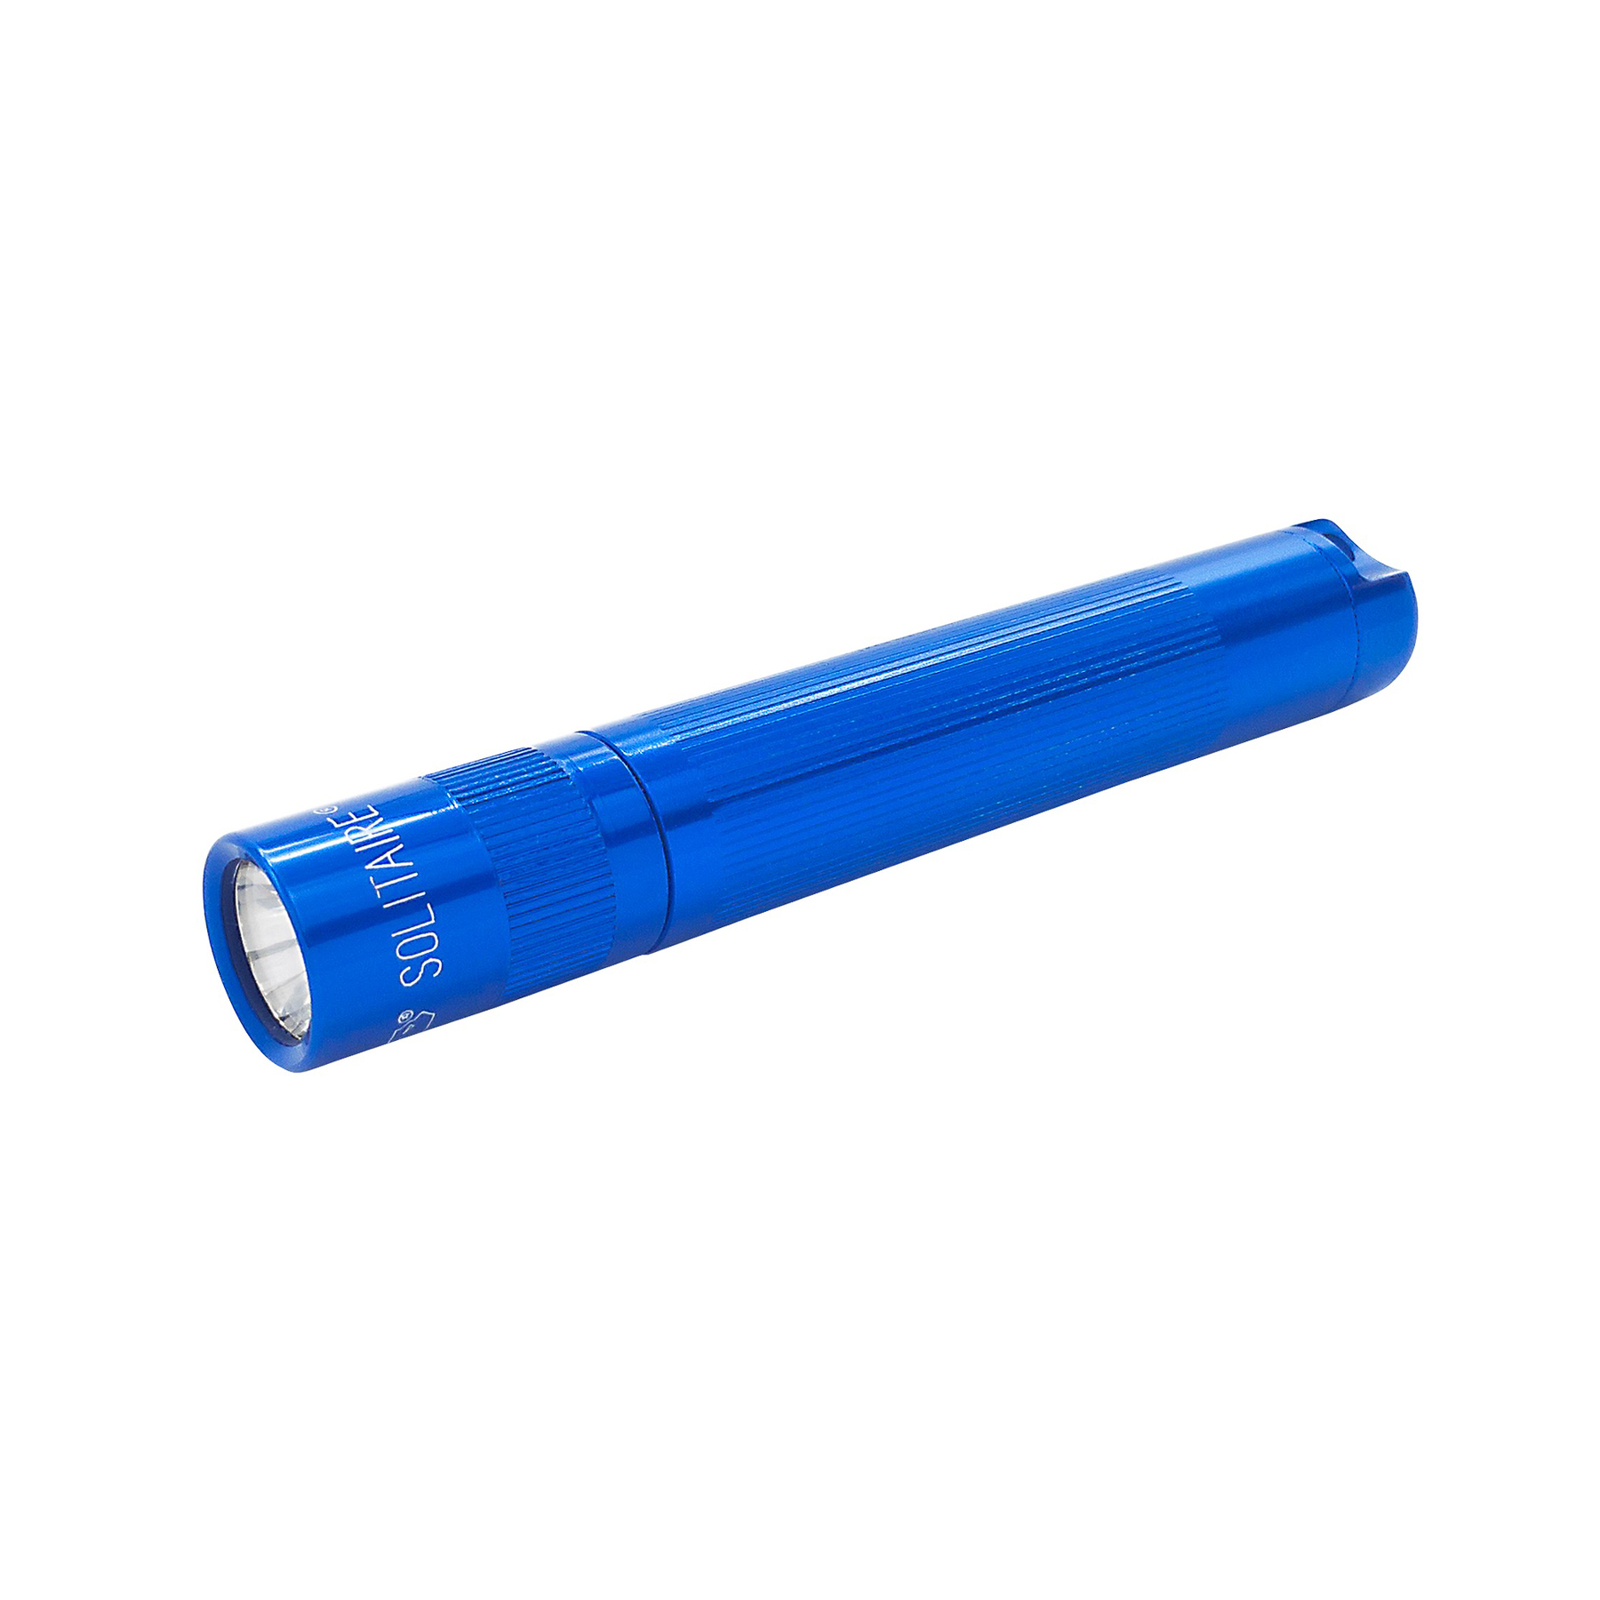 Maglite LED svjetiljka Solitaire, 1-Cell AAA, kutija, plava